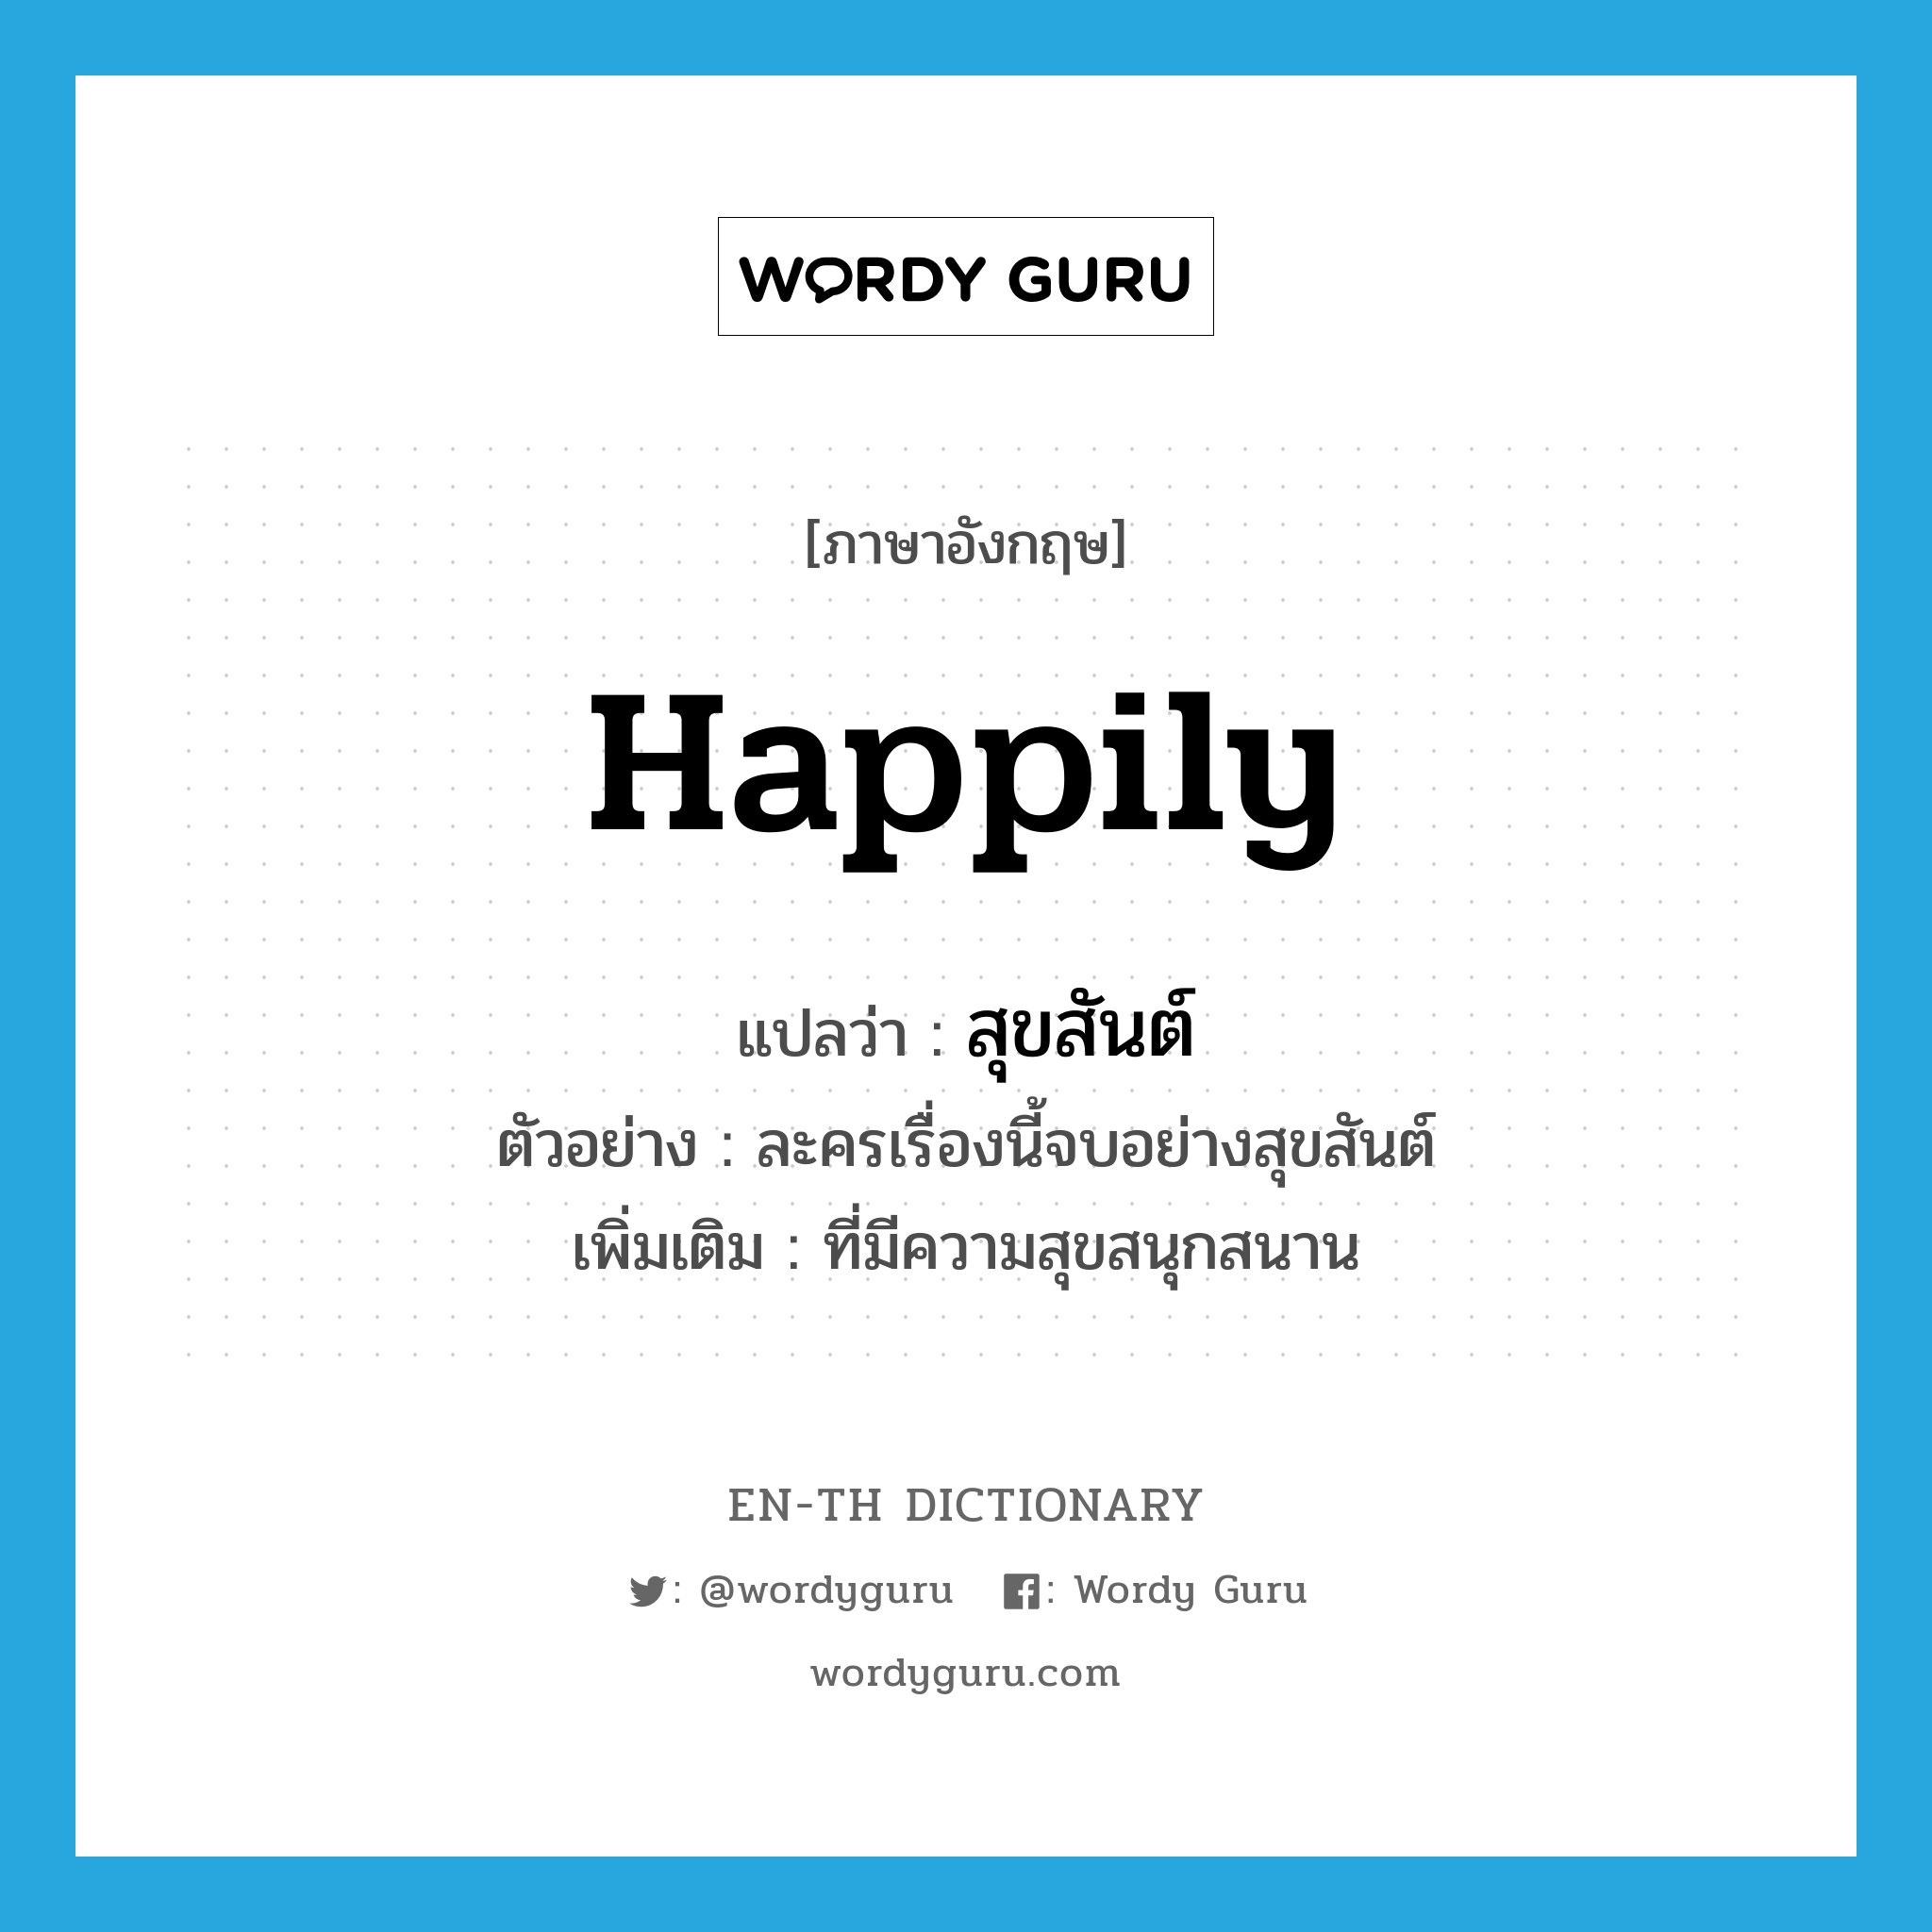 happily แปลว่า?, คำศัพท์ภาษาอังกฤษ happily แปลว่า สุขสันต์ ประเภท ADV ตัวอย่าง ละครเรื่องนี้จบอย่างสุขสันต์ เพิ่มเติม ที่มีความสุขสนุกสนาน หมวด ADV